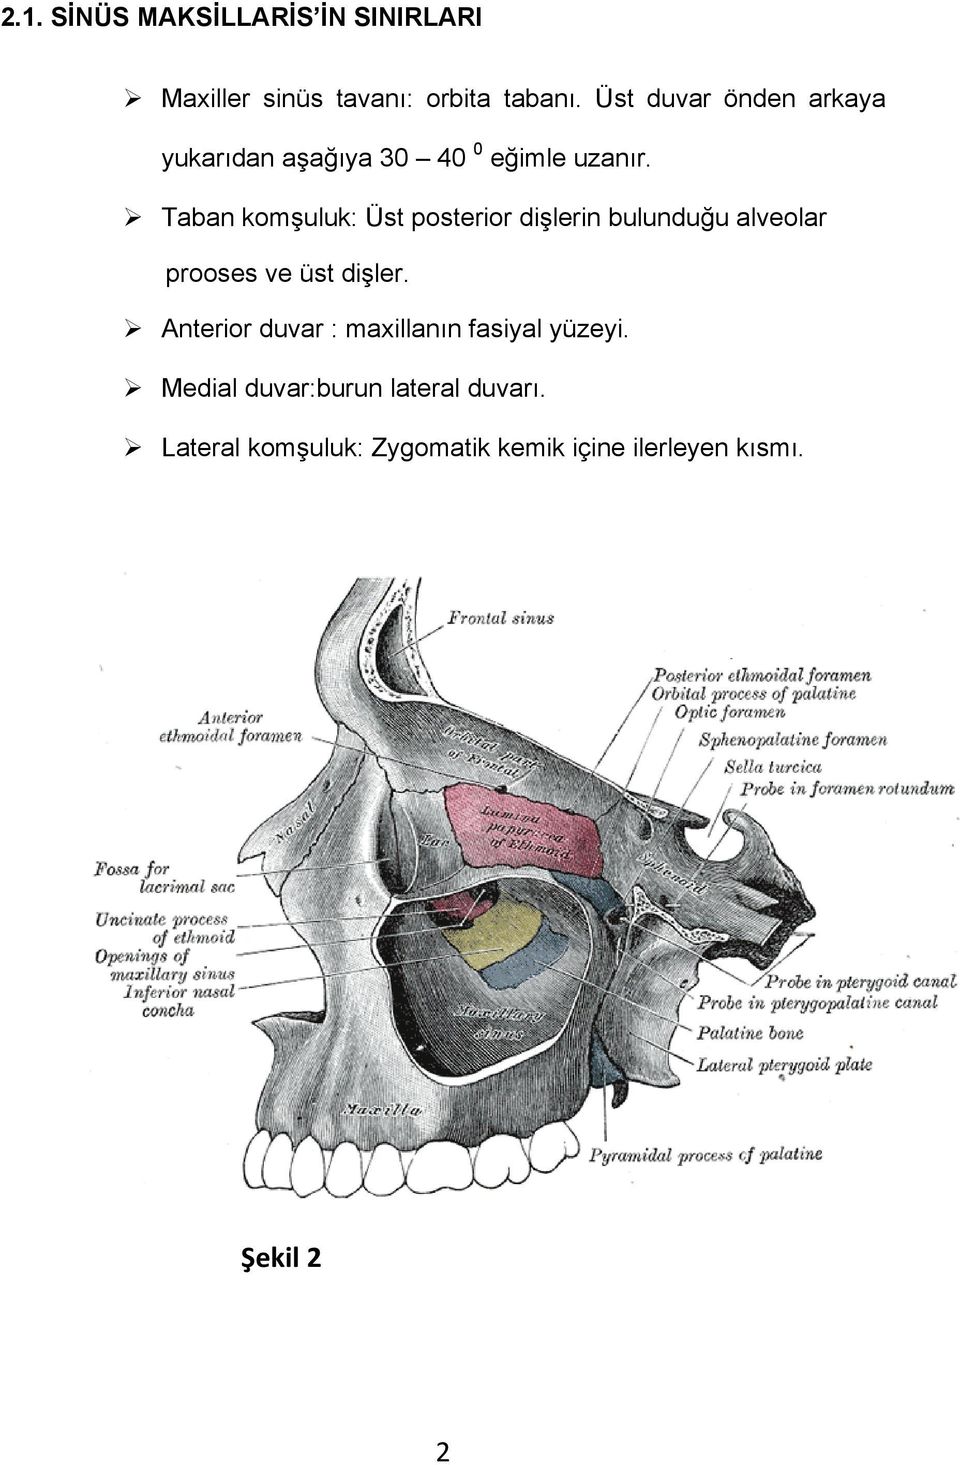 Taban komşuluk: Üst posterior dişlerin bulunduğu alveolar prooses ve üst dişler.